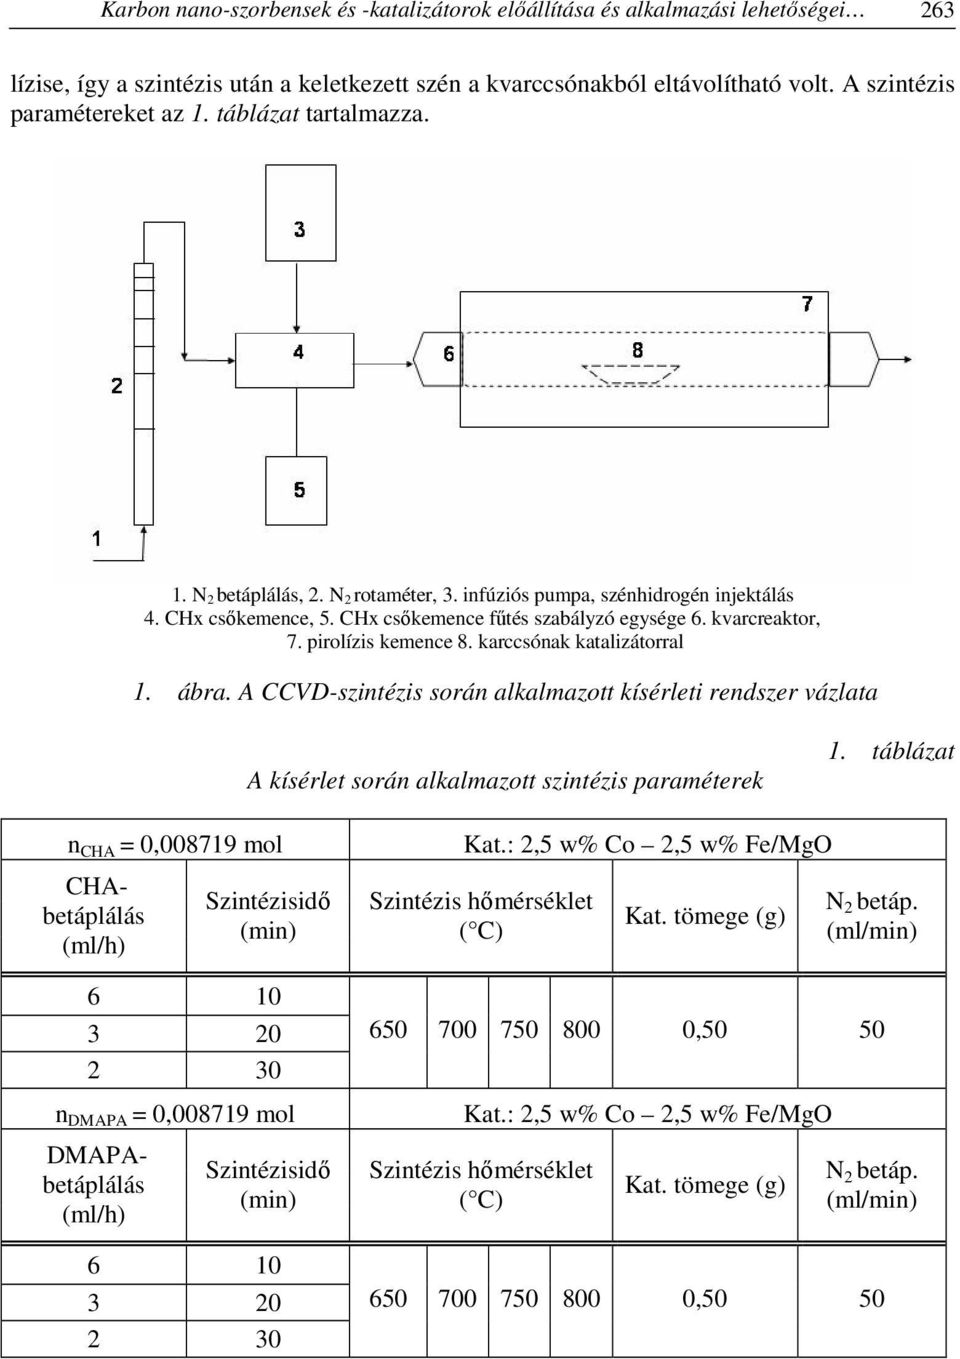 pirolízis kemence 8. karccsónak katalizátorral 1. ábra. A CCVD-szintézis során alkalmazott kísérleti rendszer vázlata A kísérlet során alkalmazott szintézis paraméterek 1.